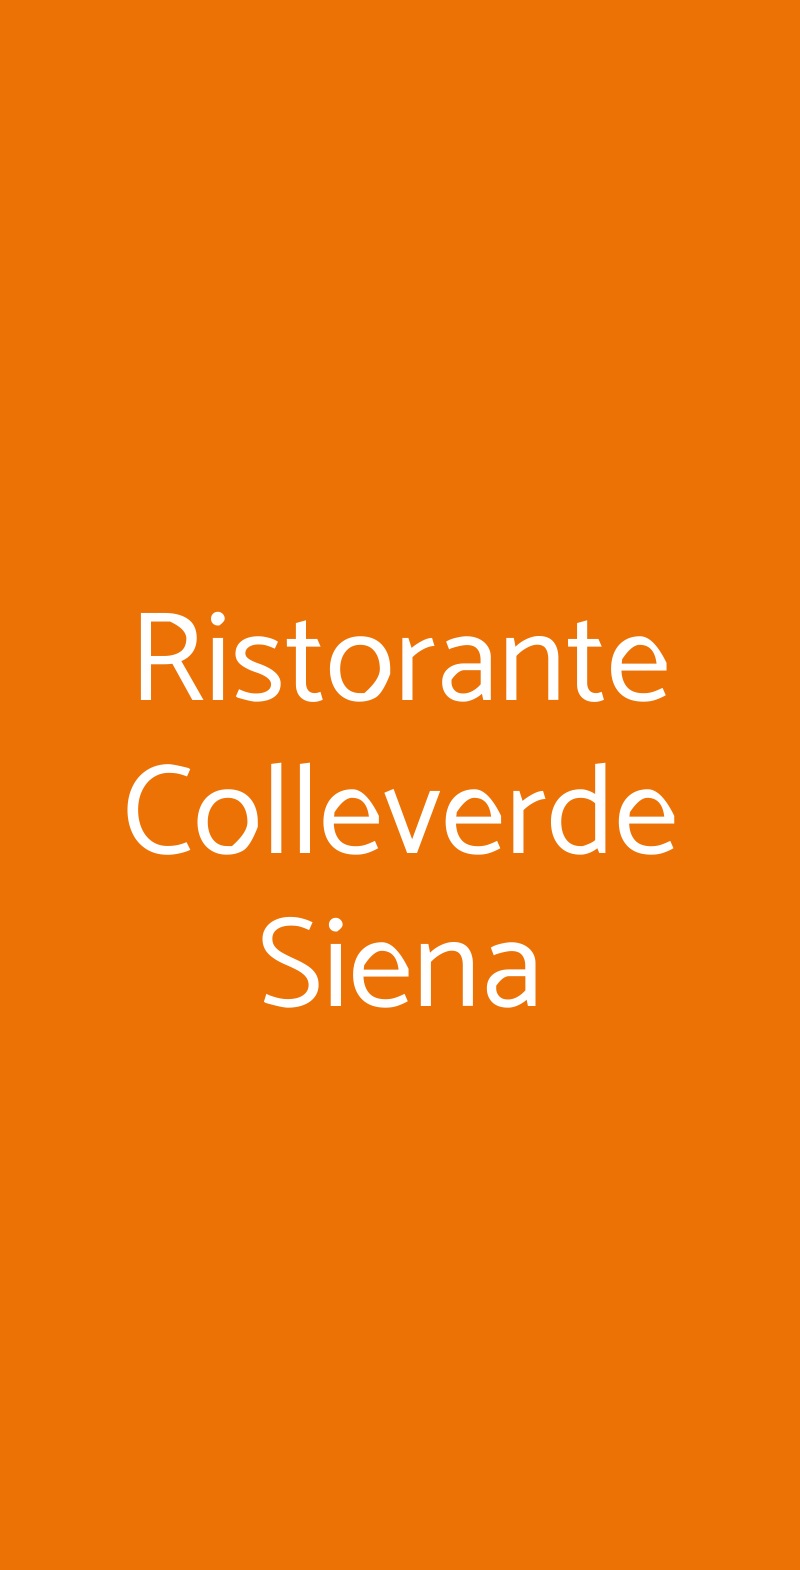 Ristorante Colleverde Siena Siena menù 1 pagina